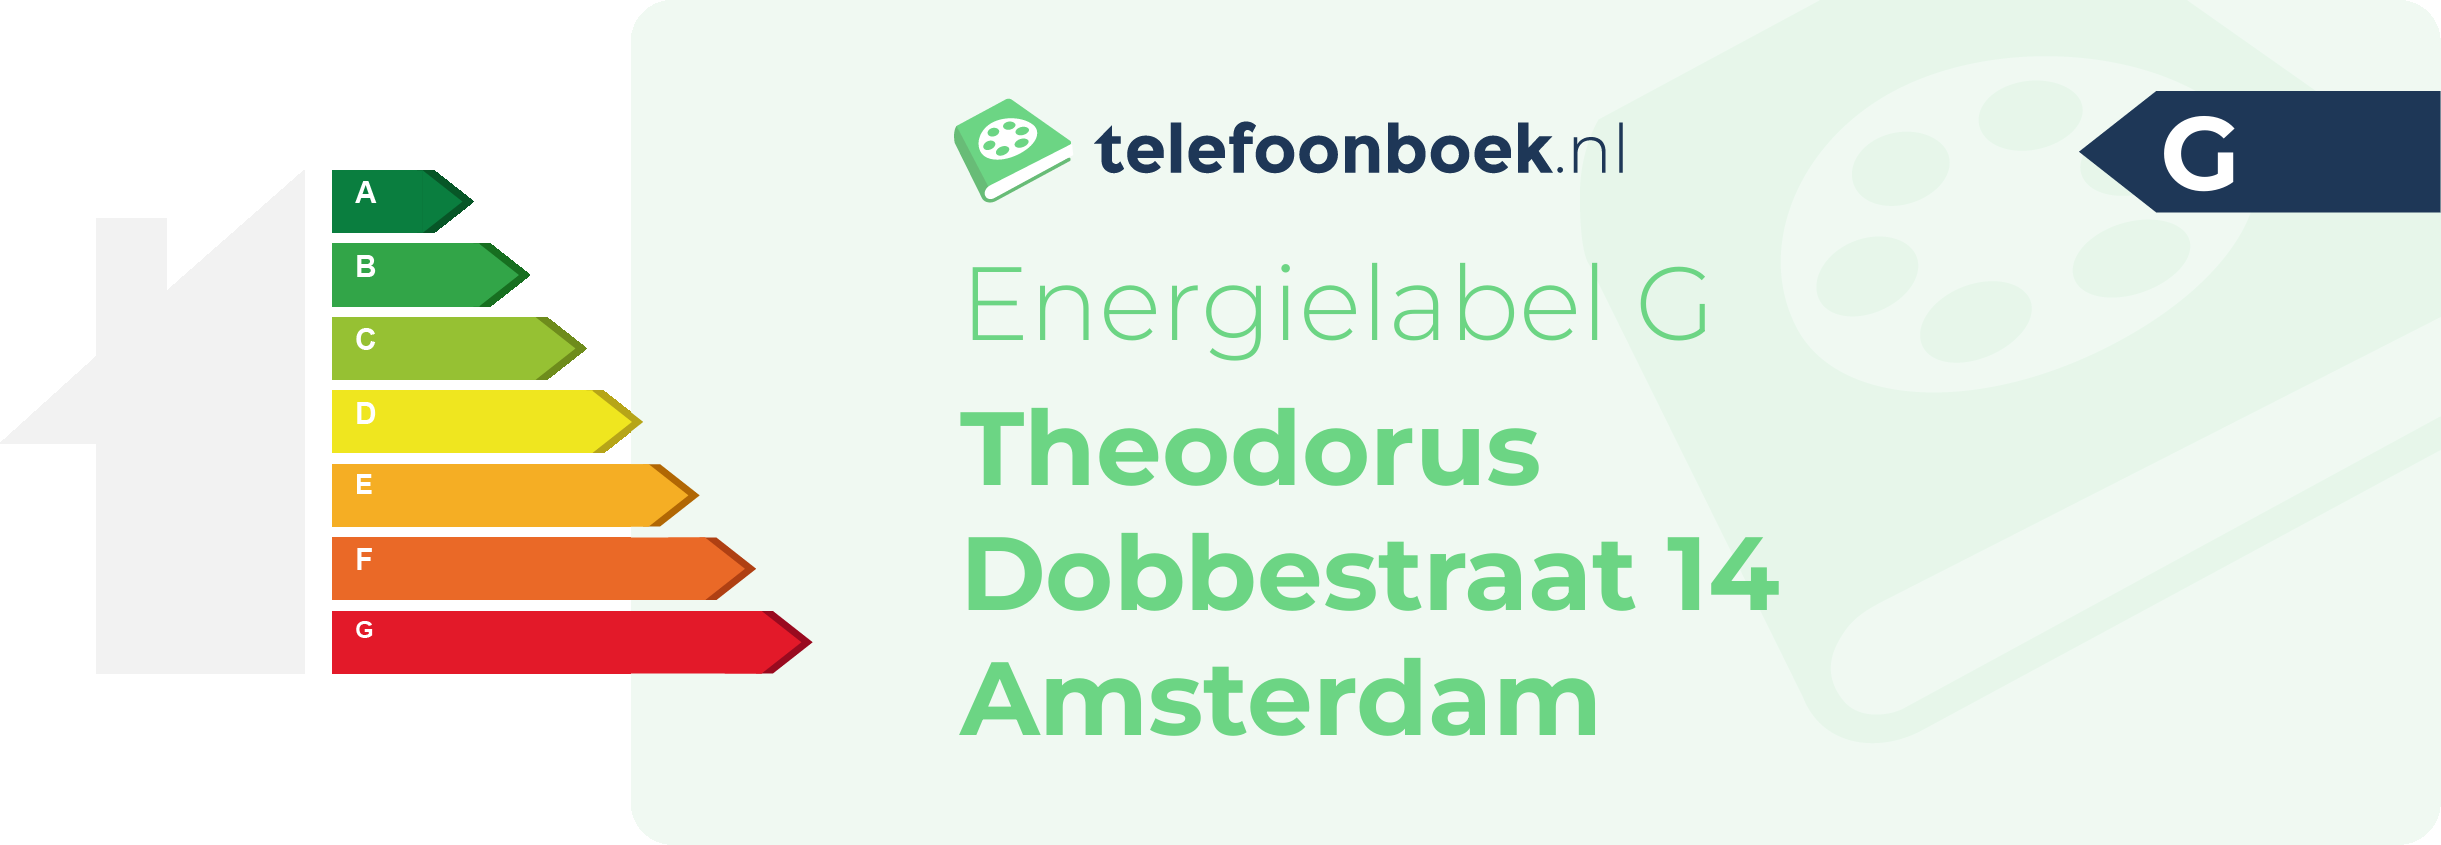 Energielabel Theodorus Dobbestraat 14 Amsterdam